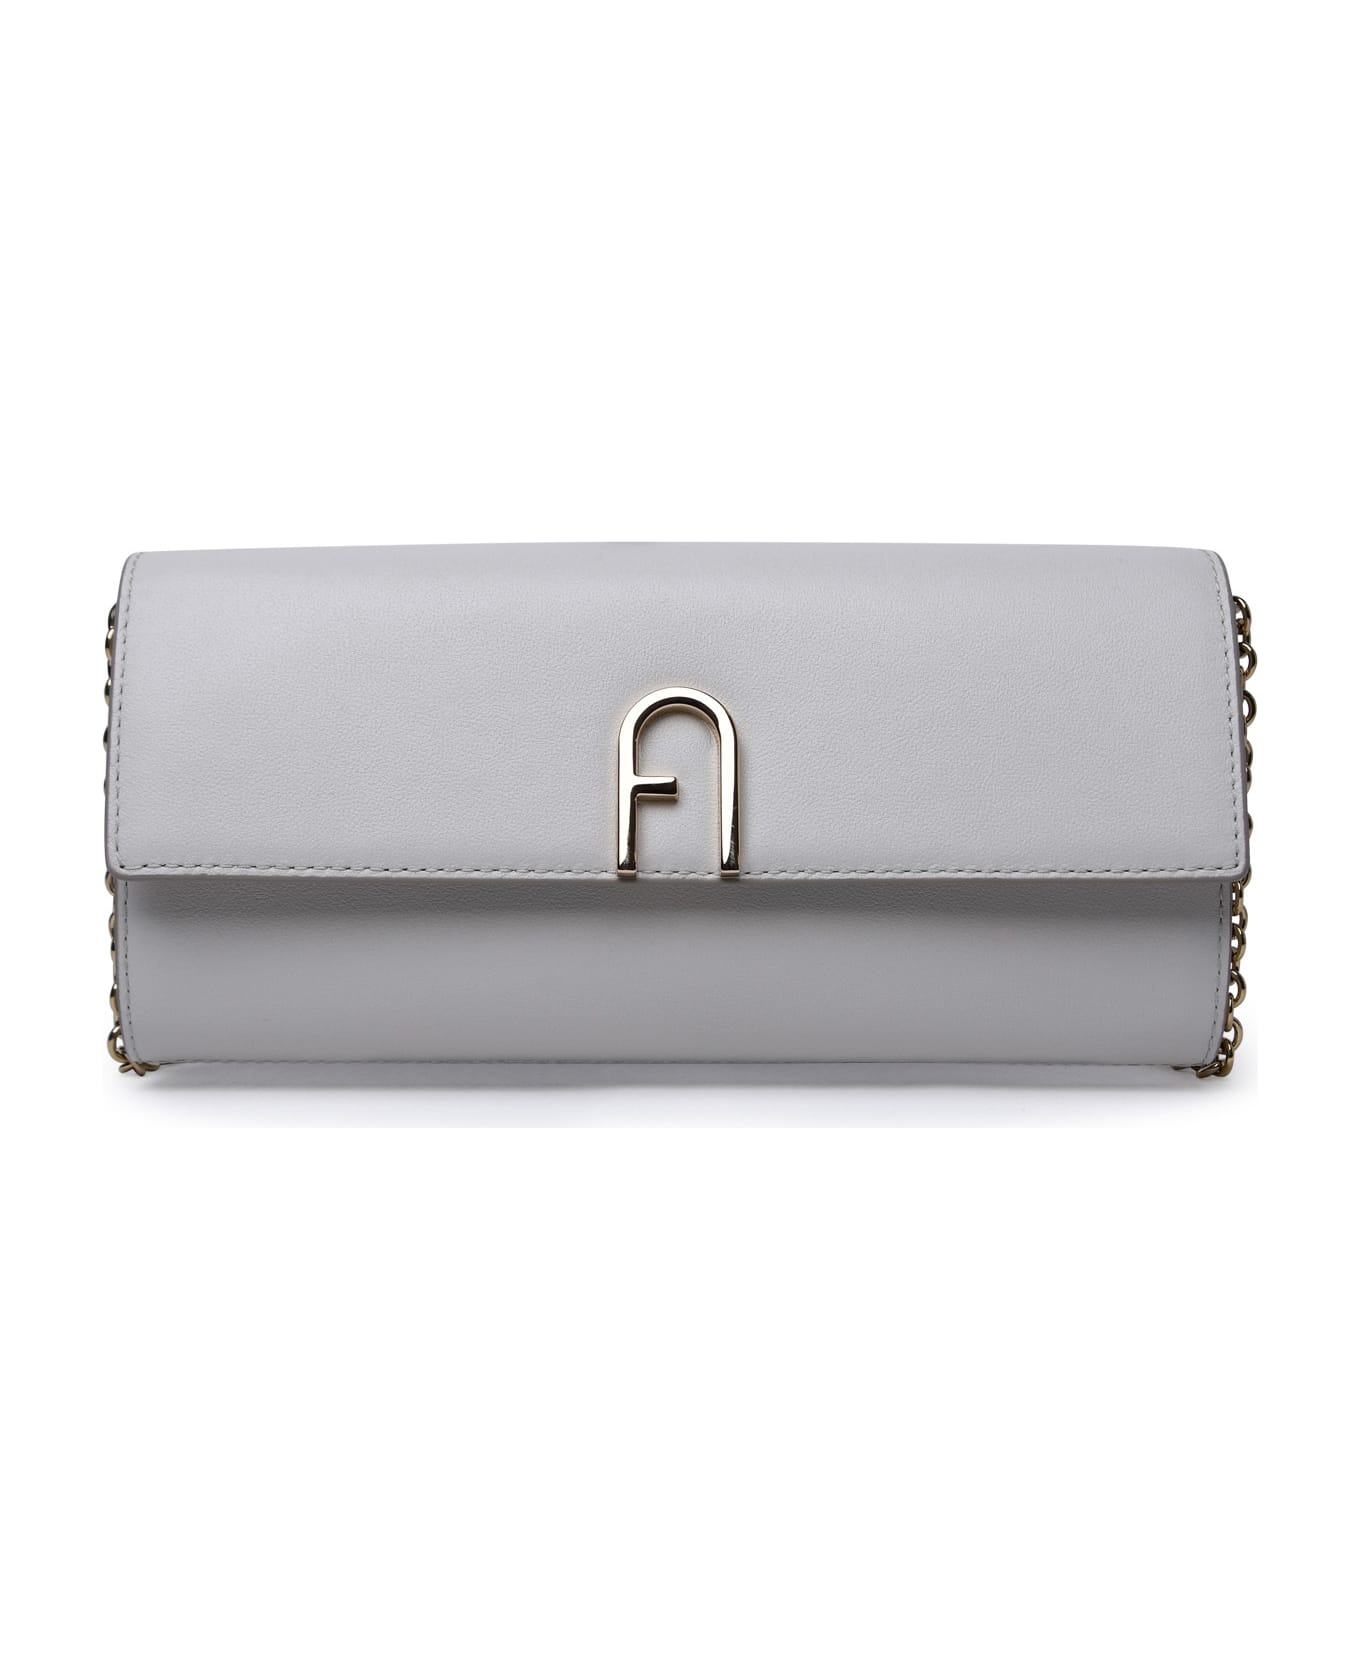 Furla 'flow' Mini White Leather Crossbody Bag - White